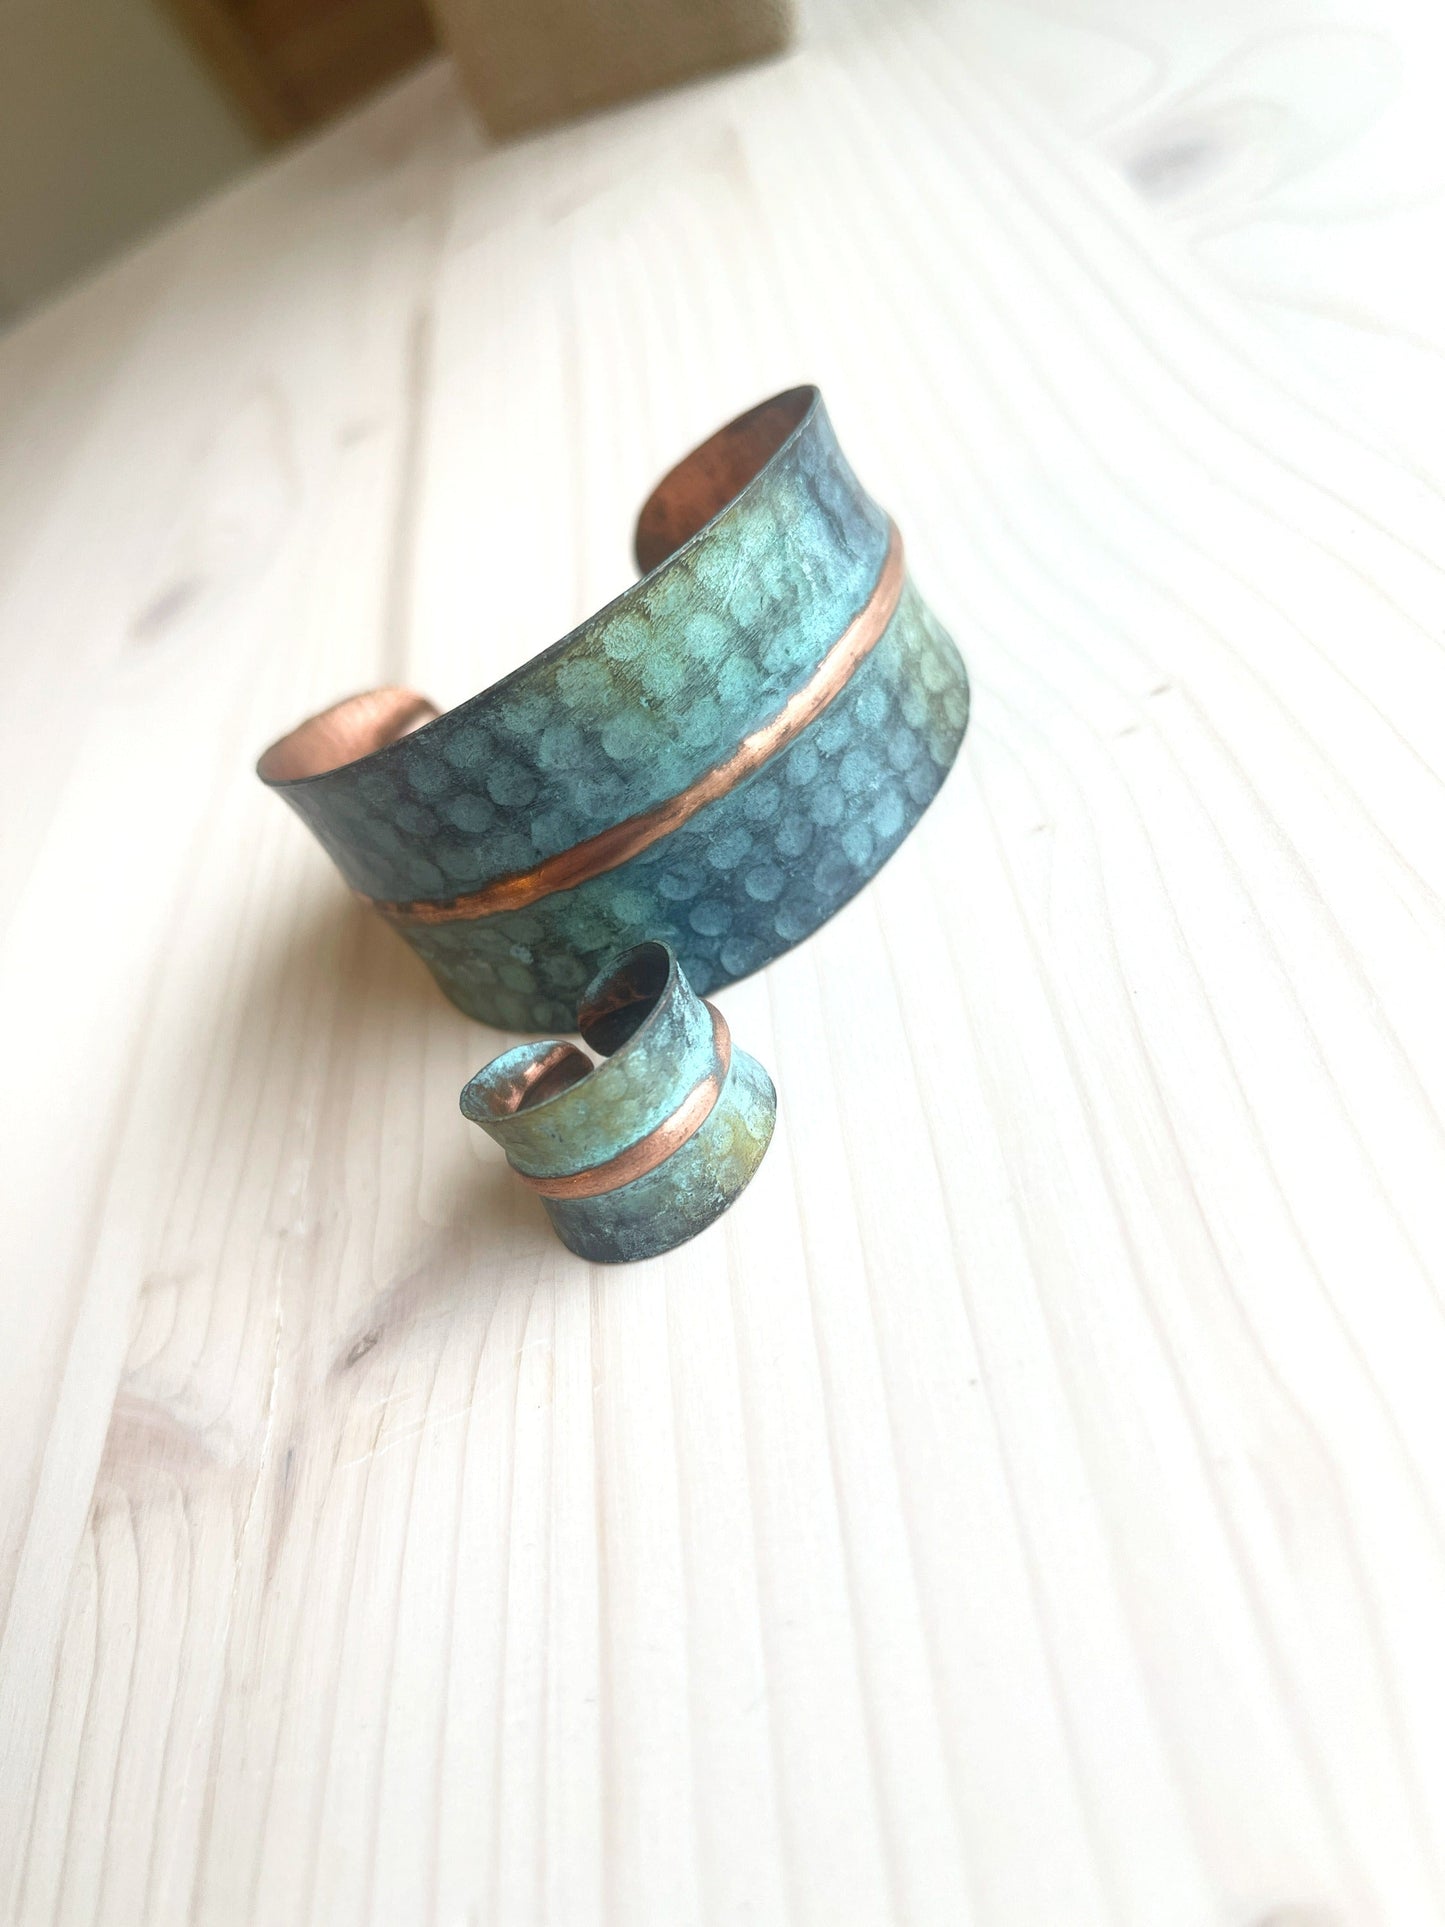 Handmade copper bracelet and ring